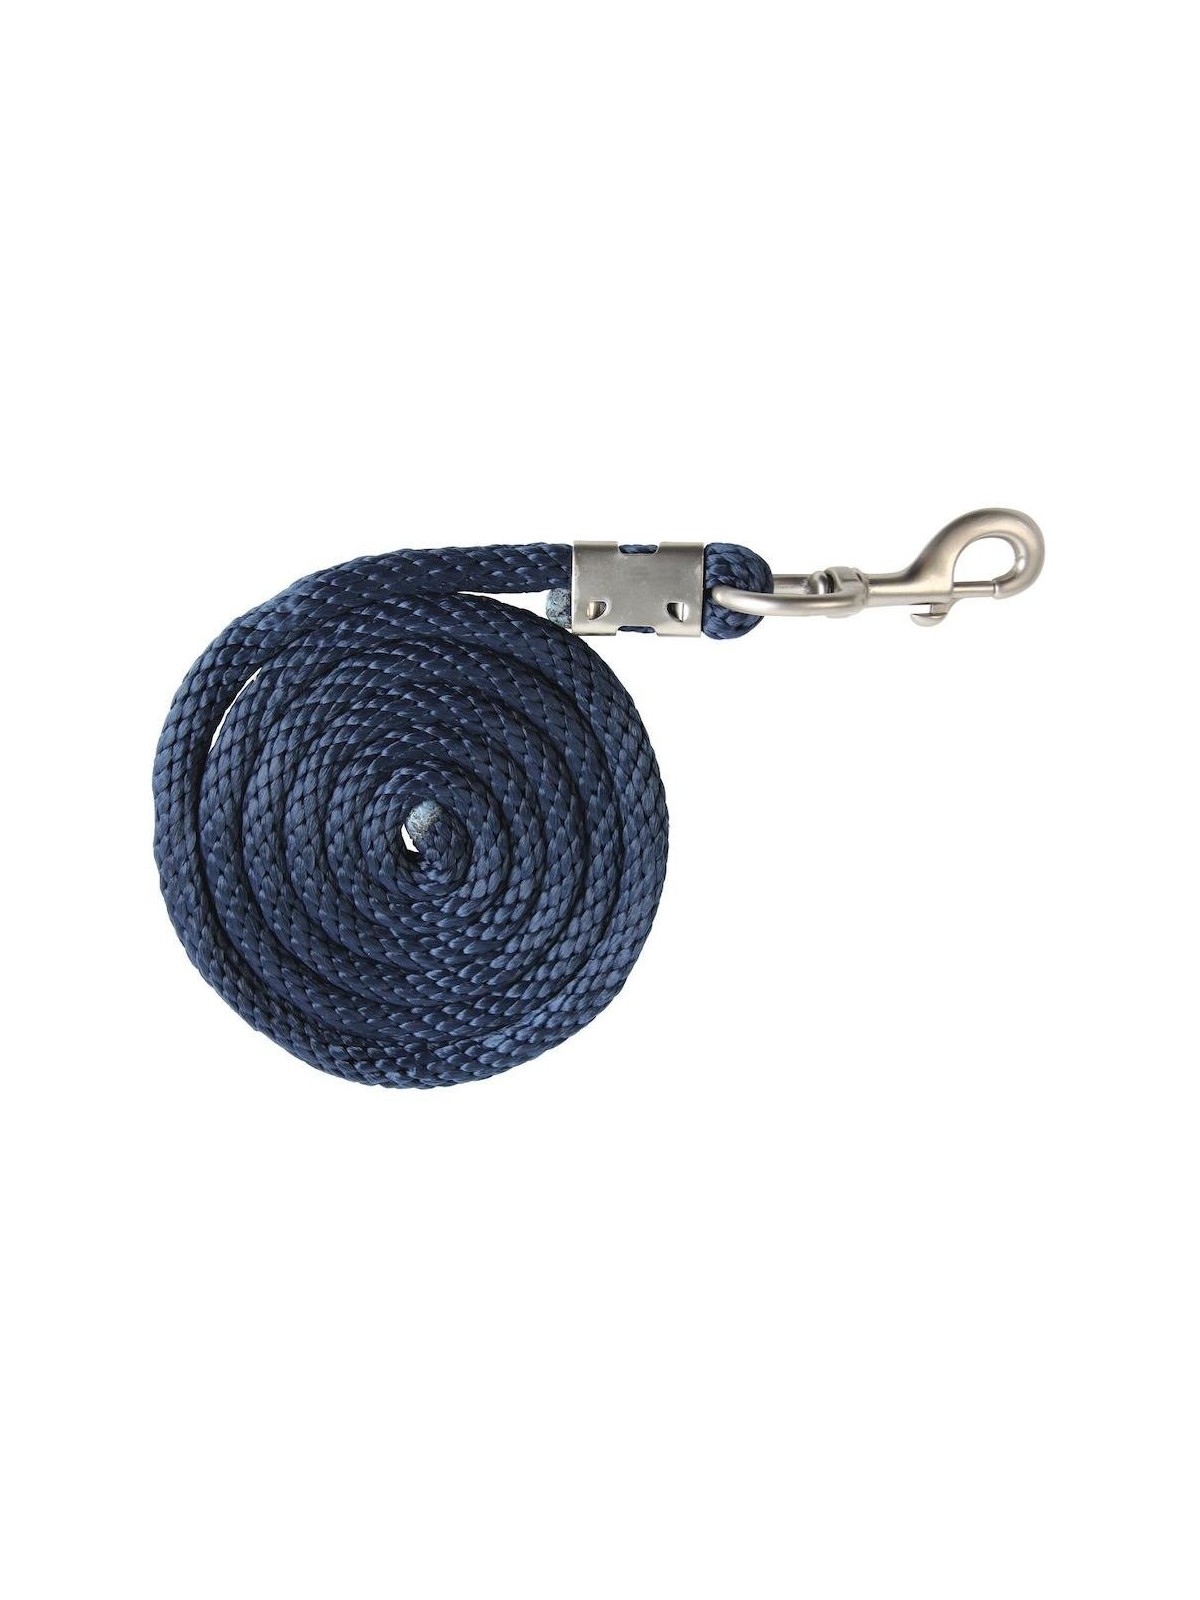 Tie Rope Premium dark blue